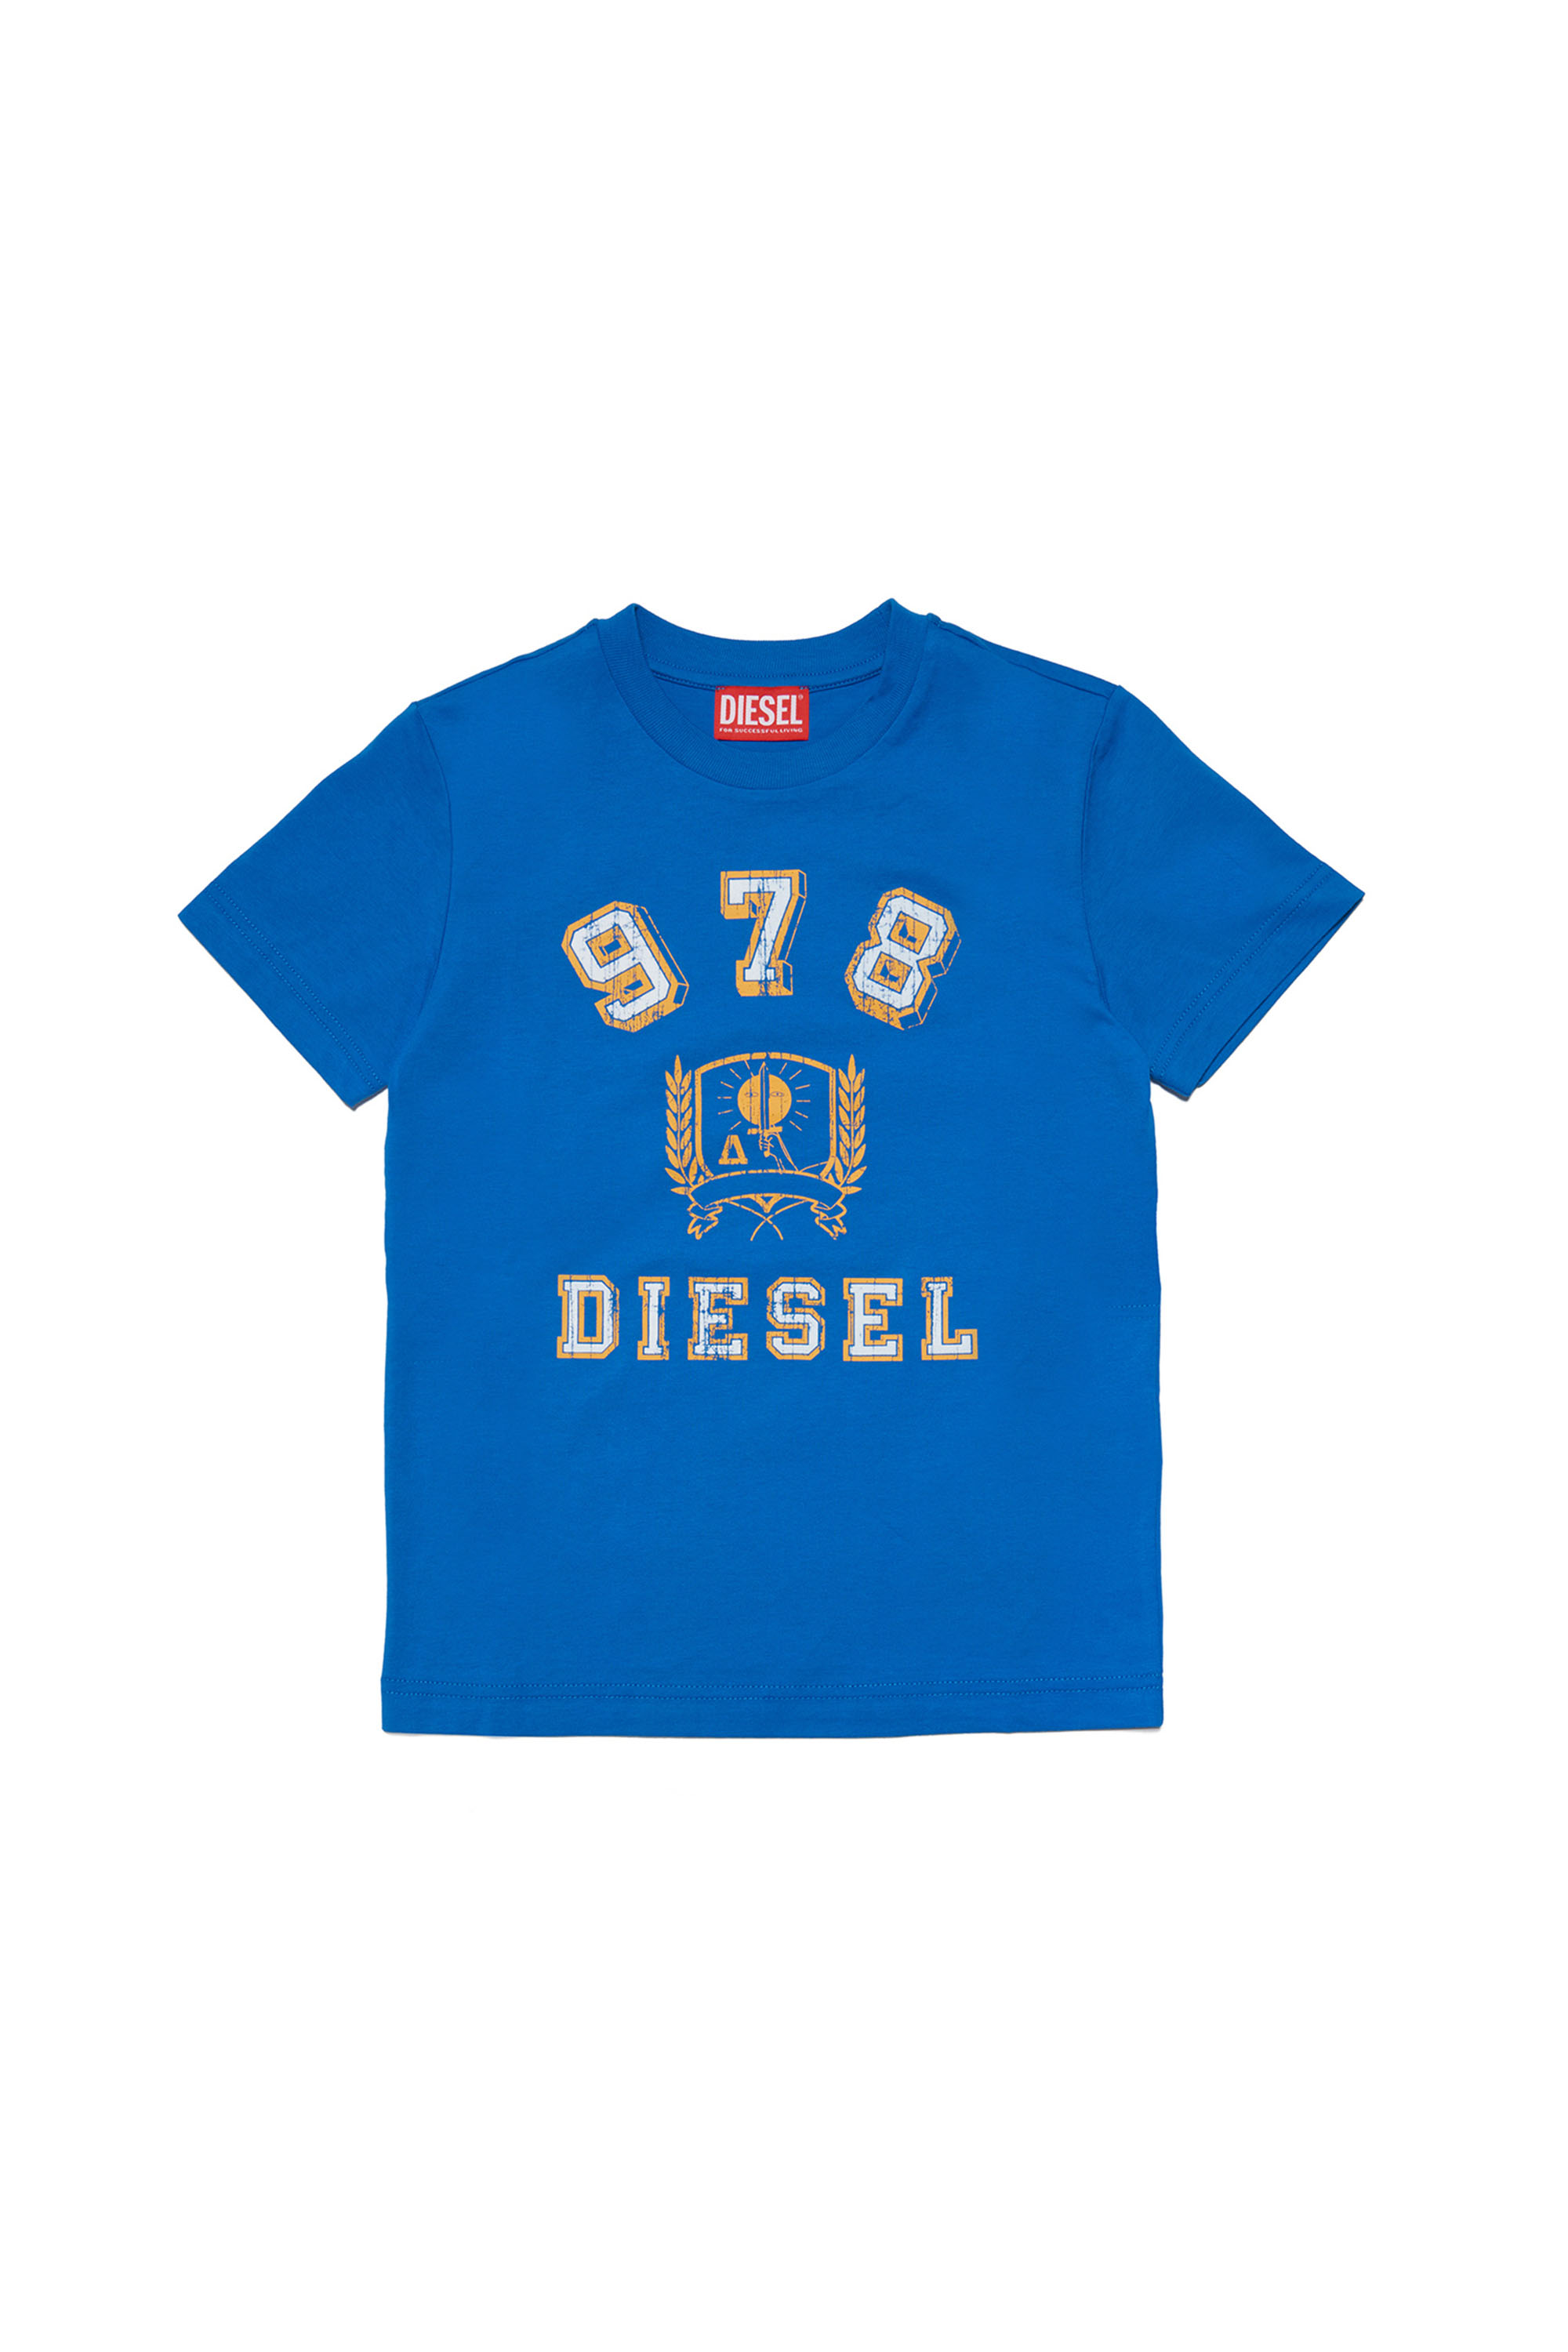 Diesel - TDIEGORE11, Blue - Image 1